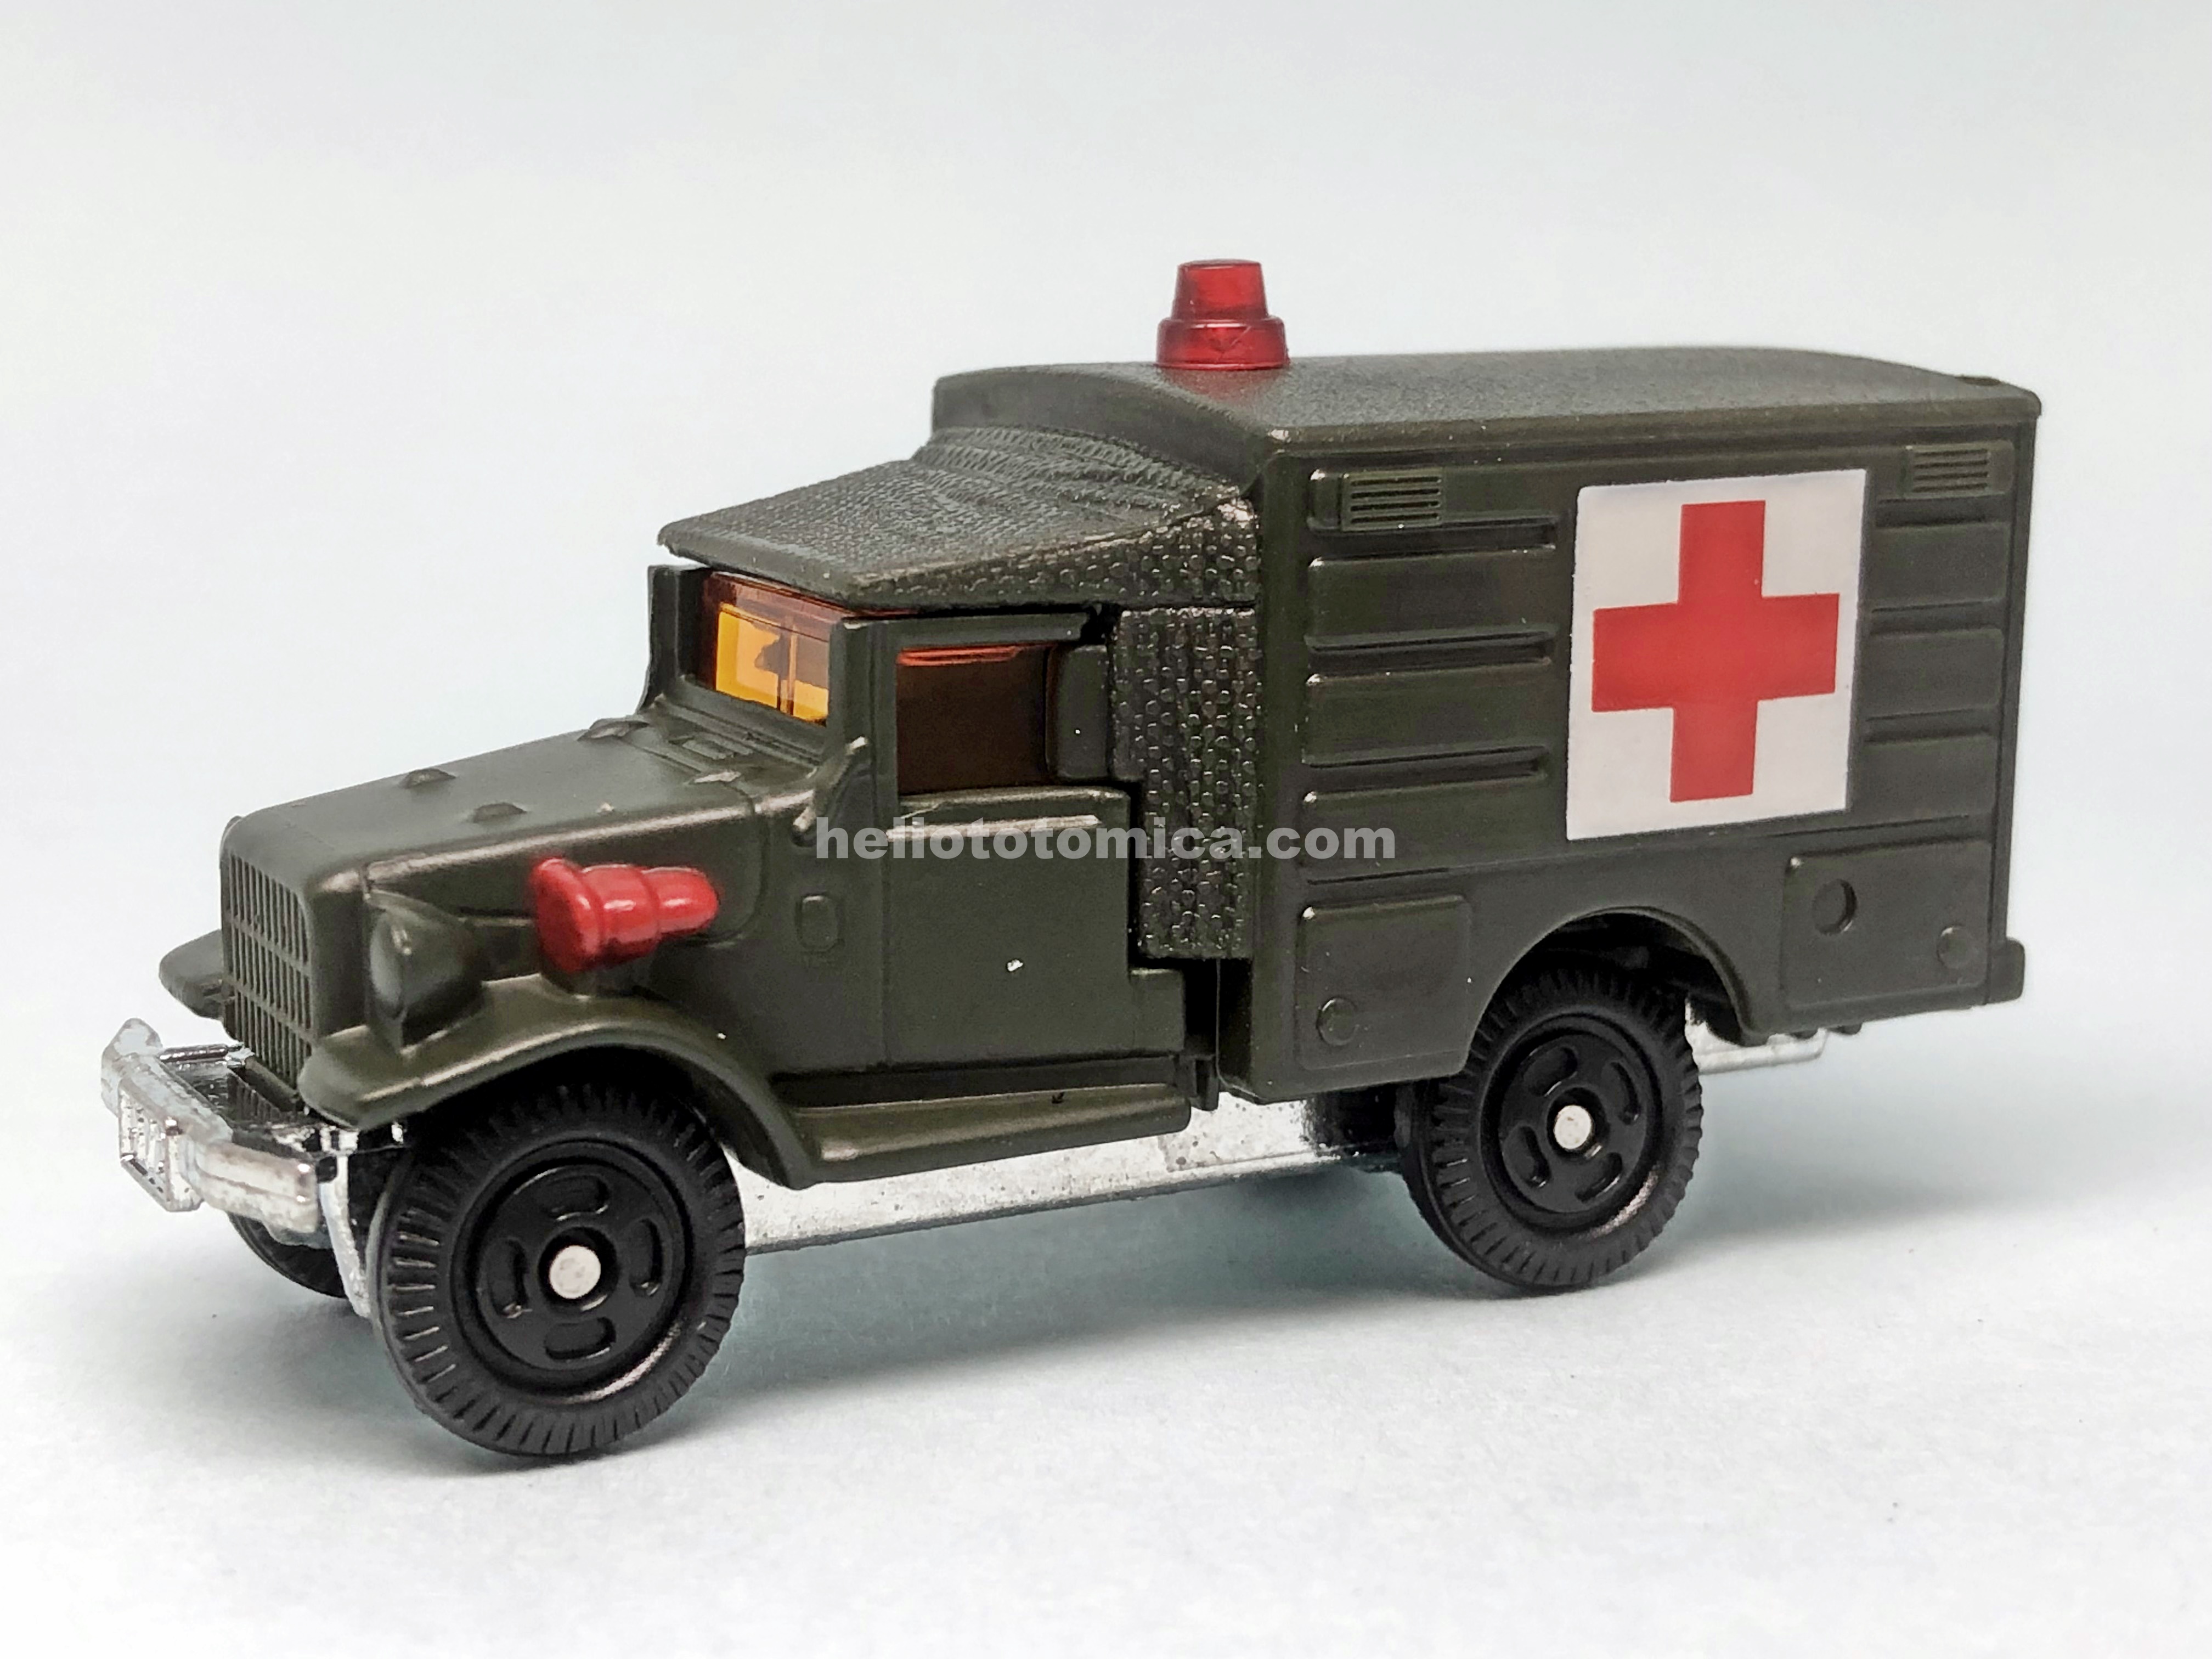 67-2 トヨタ 自衛隊救急車(HQ15V型) | はるてんのトミカ